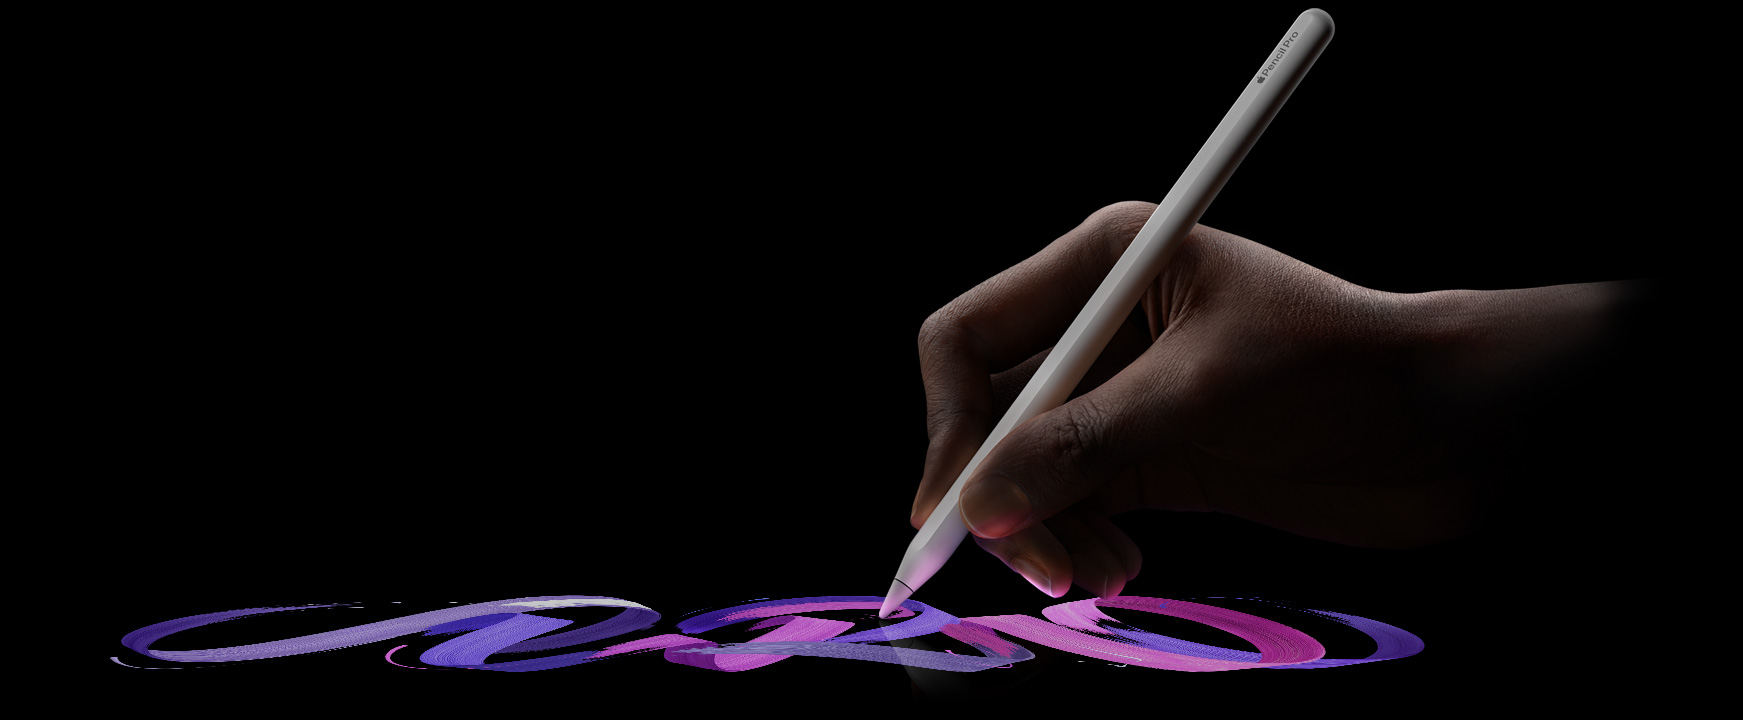 Een gebruiker houdt Apple Pencil Pro vast en schildert een kleurrijke penseelstreek